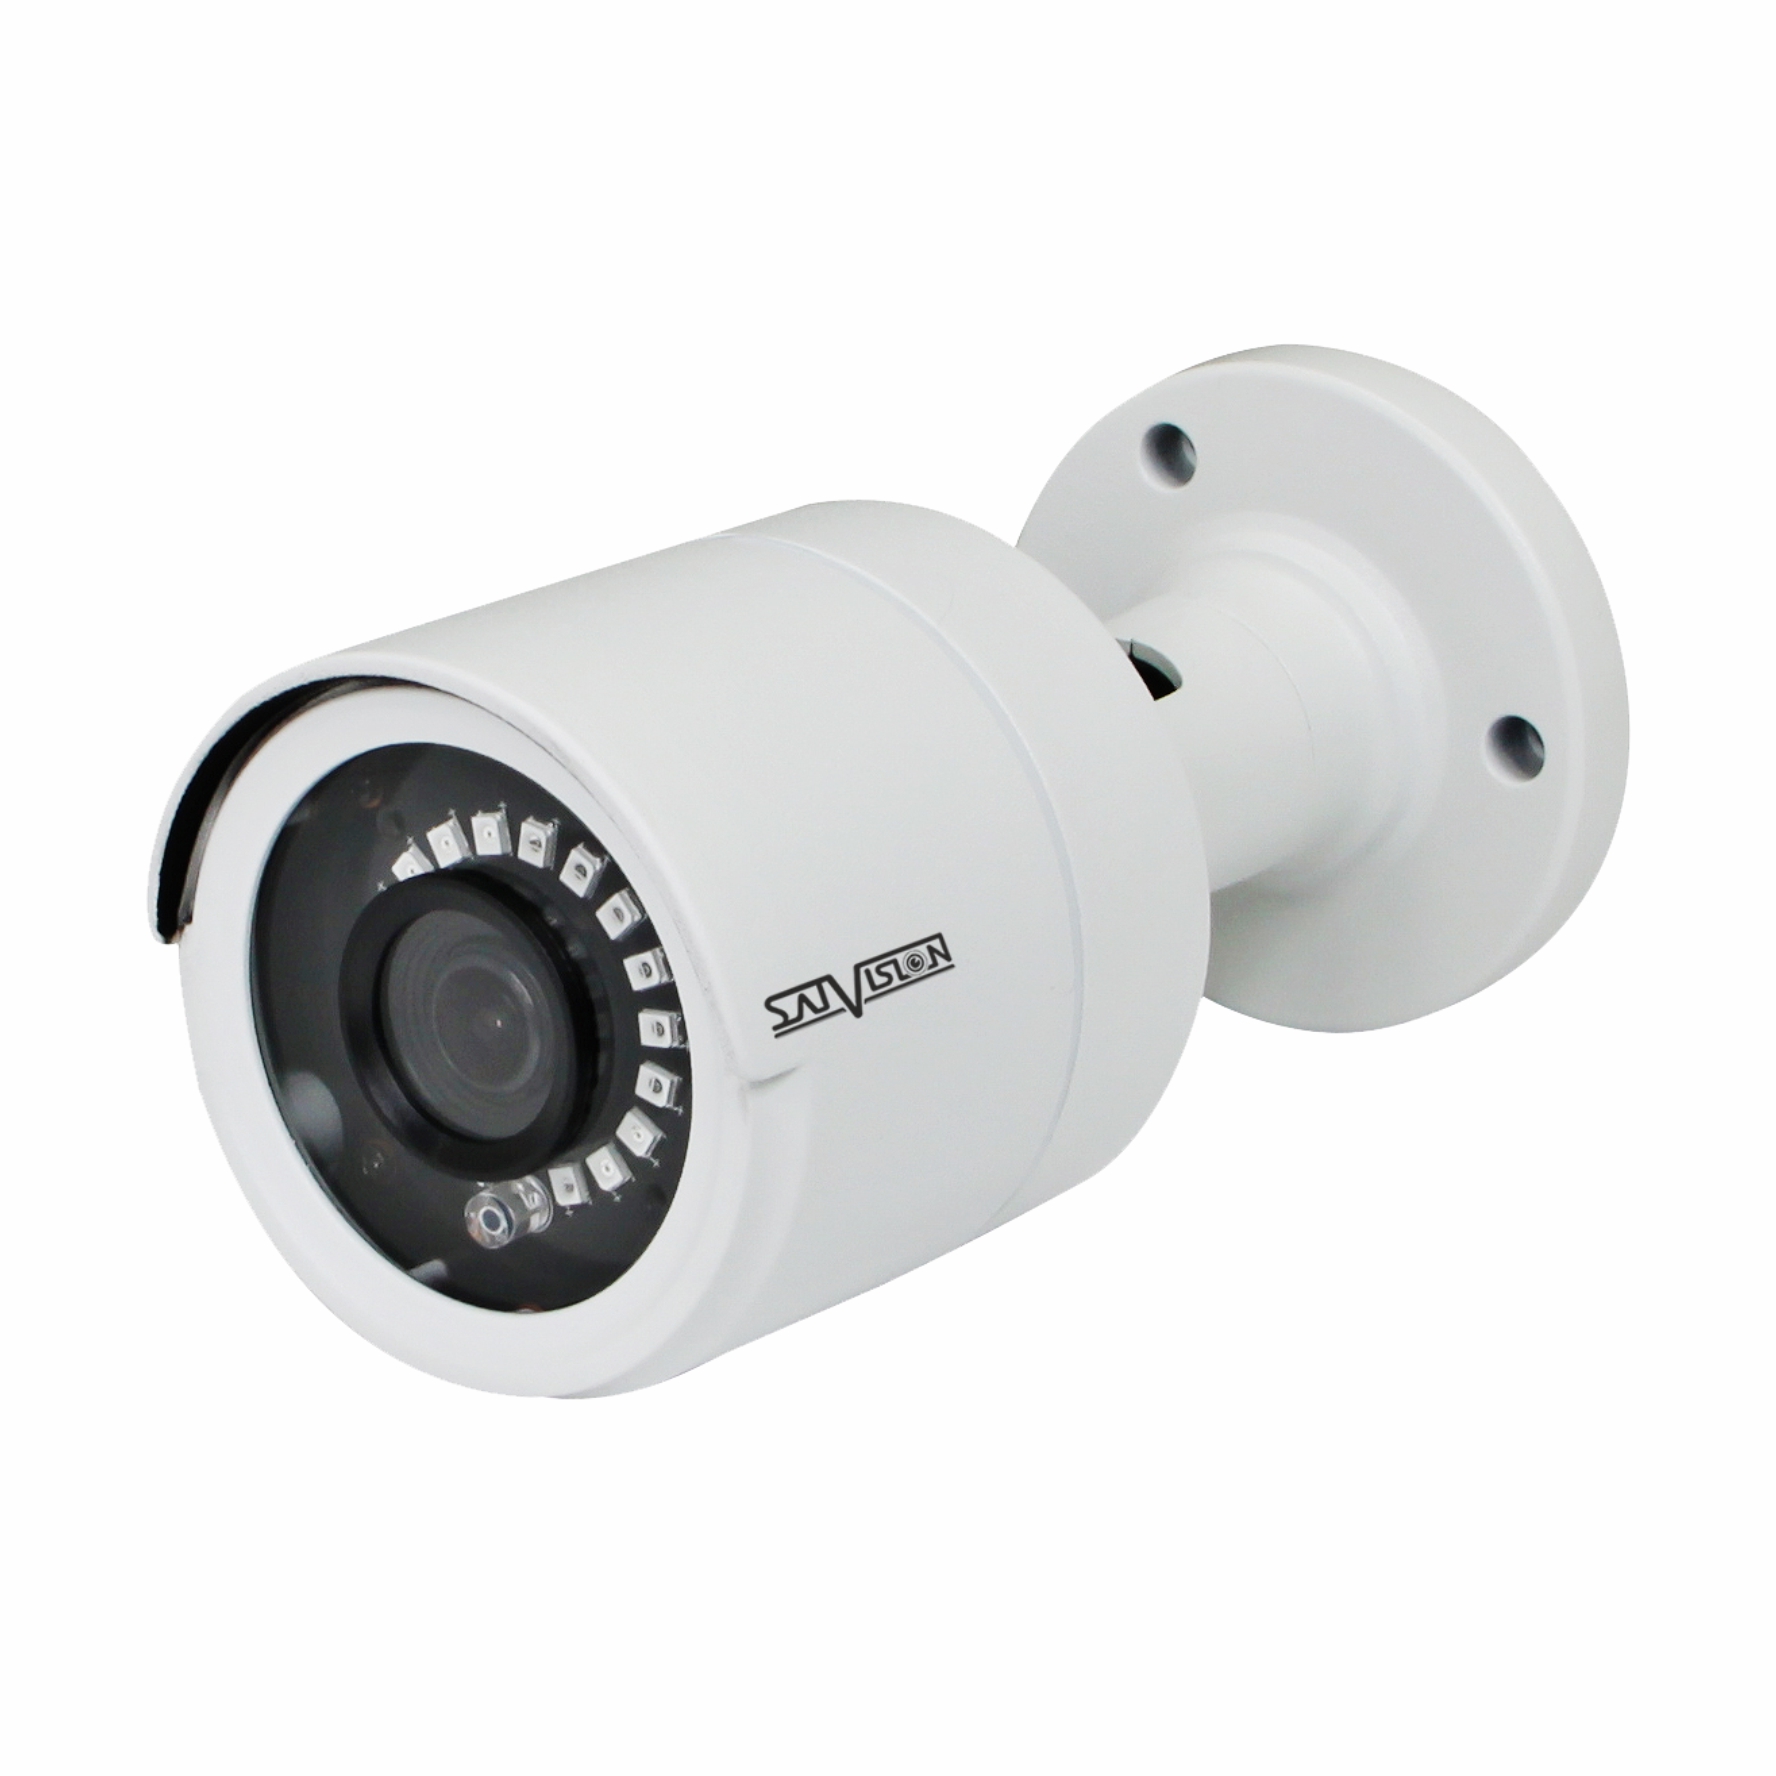 Камера видеонаблюдения 3 мп. IP-видеокамера уличная svi-s123. Satvision svi-s123 SD видеокамера IP. IP-видеокамера Satvision svi-s123 (2mpix, 2.8мм). Svi-s123 SD SL V2.0 2mpix 2.8mm видеокамера IP.